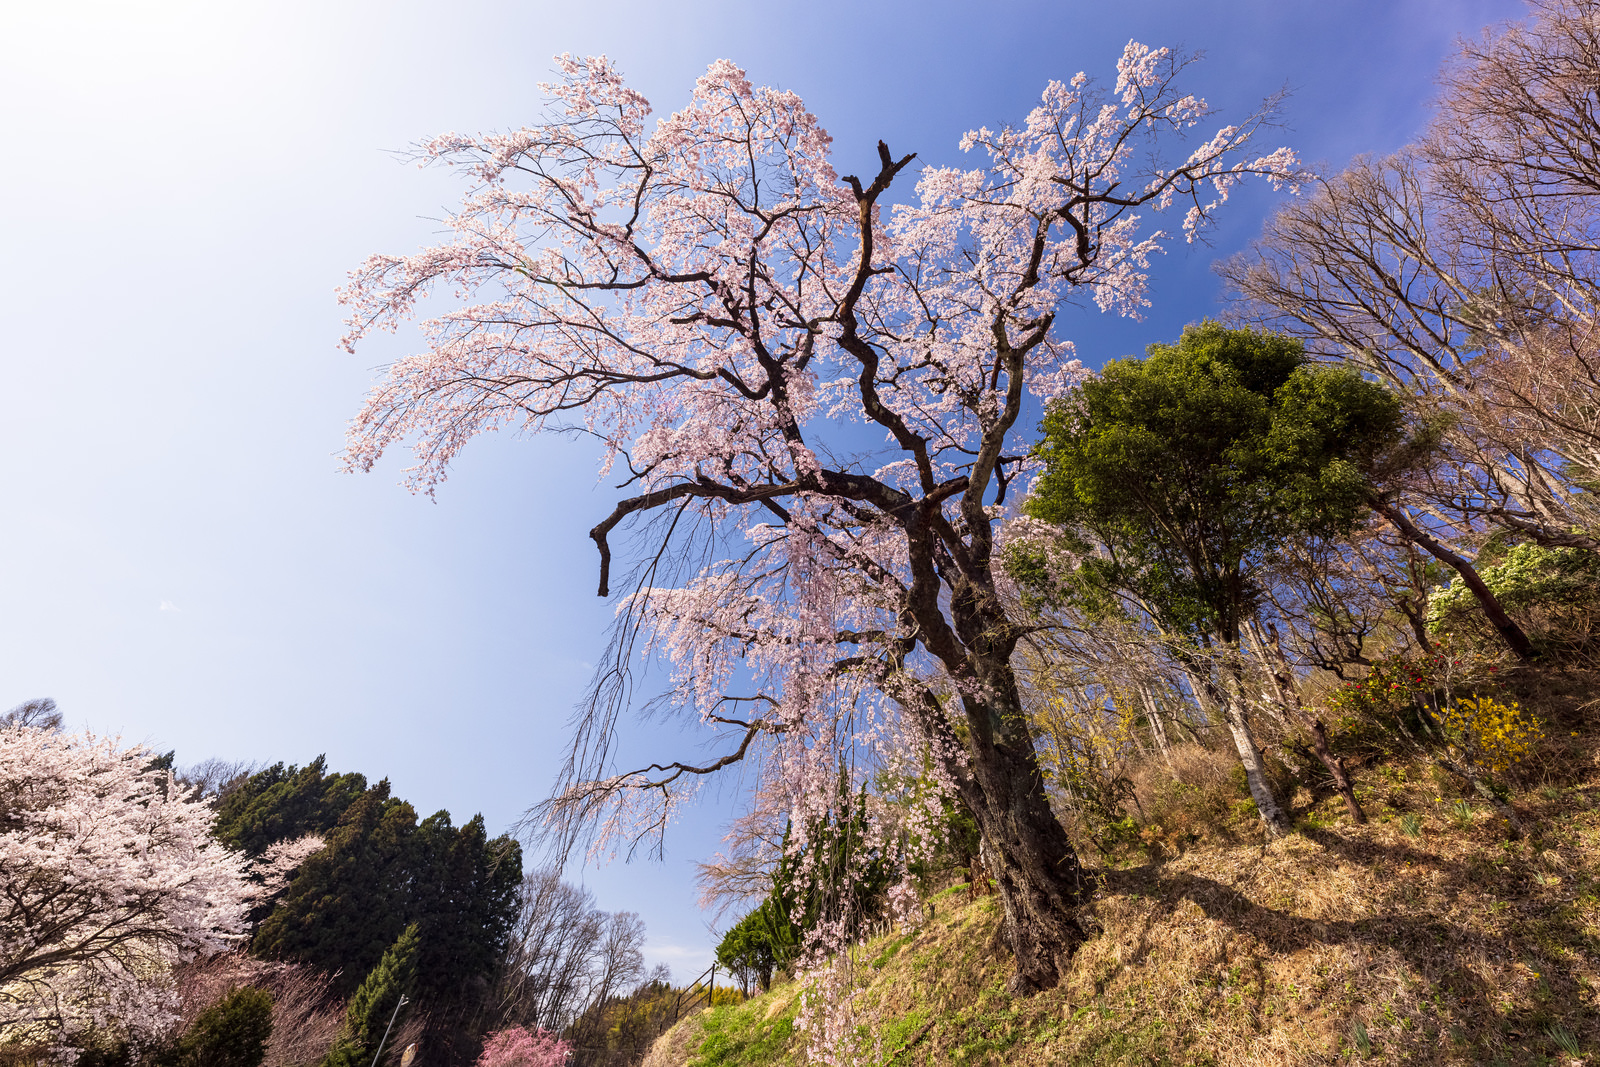 「道路脇の斜面に咲く伊勢桜 | フリー素材のぱくたそ」の写真